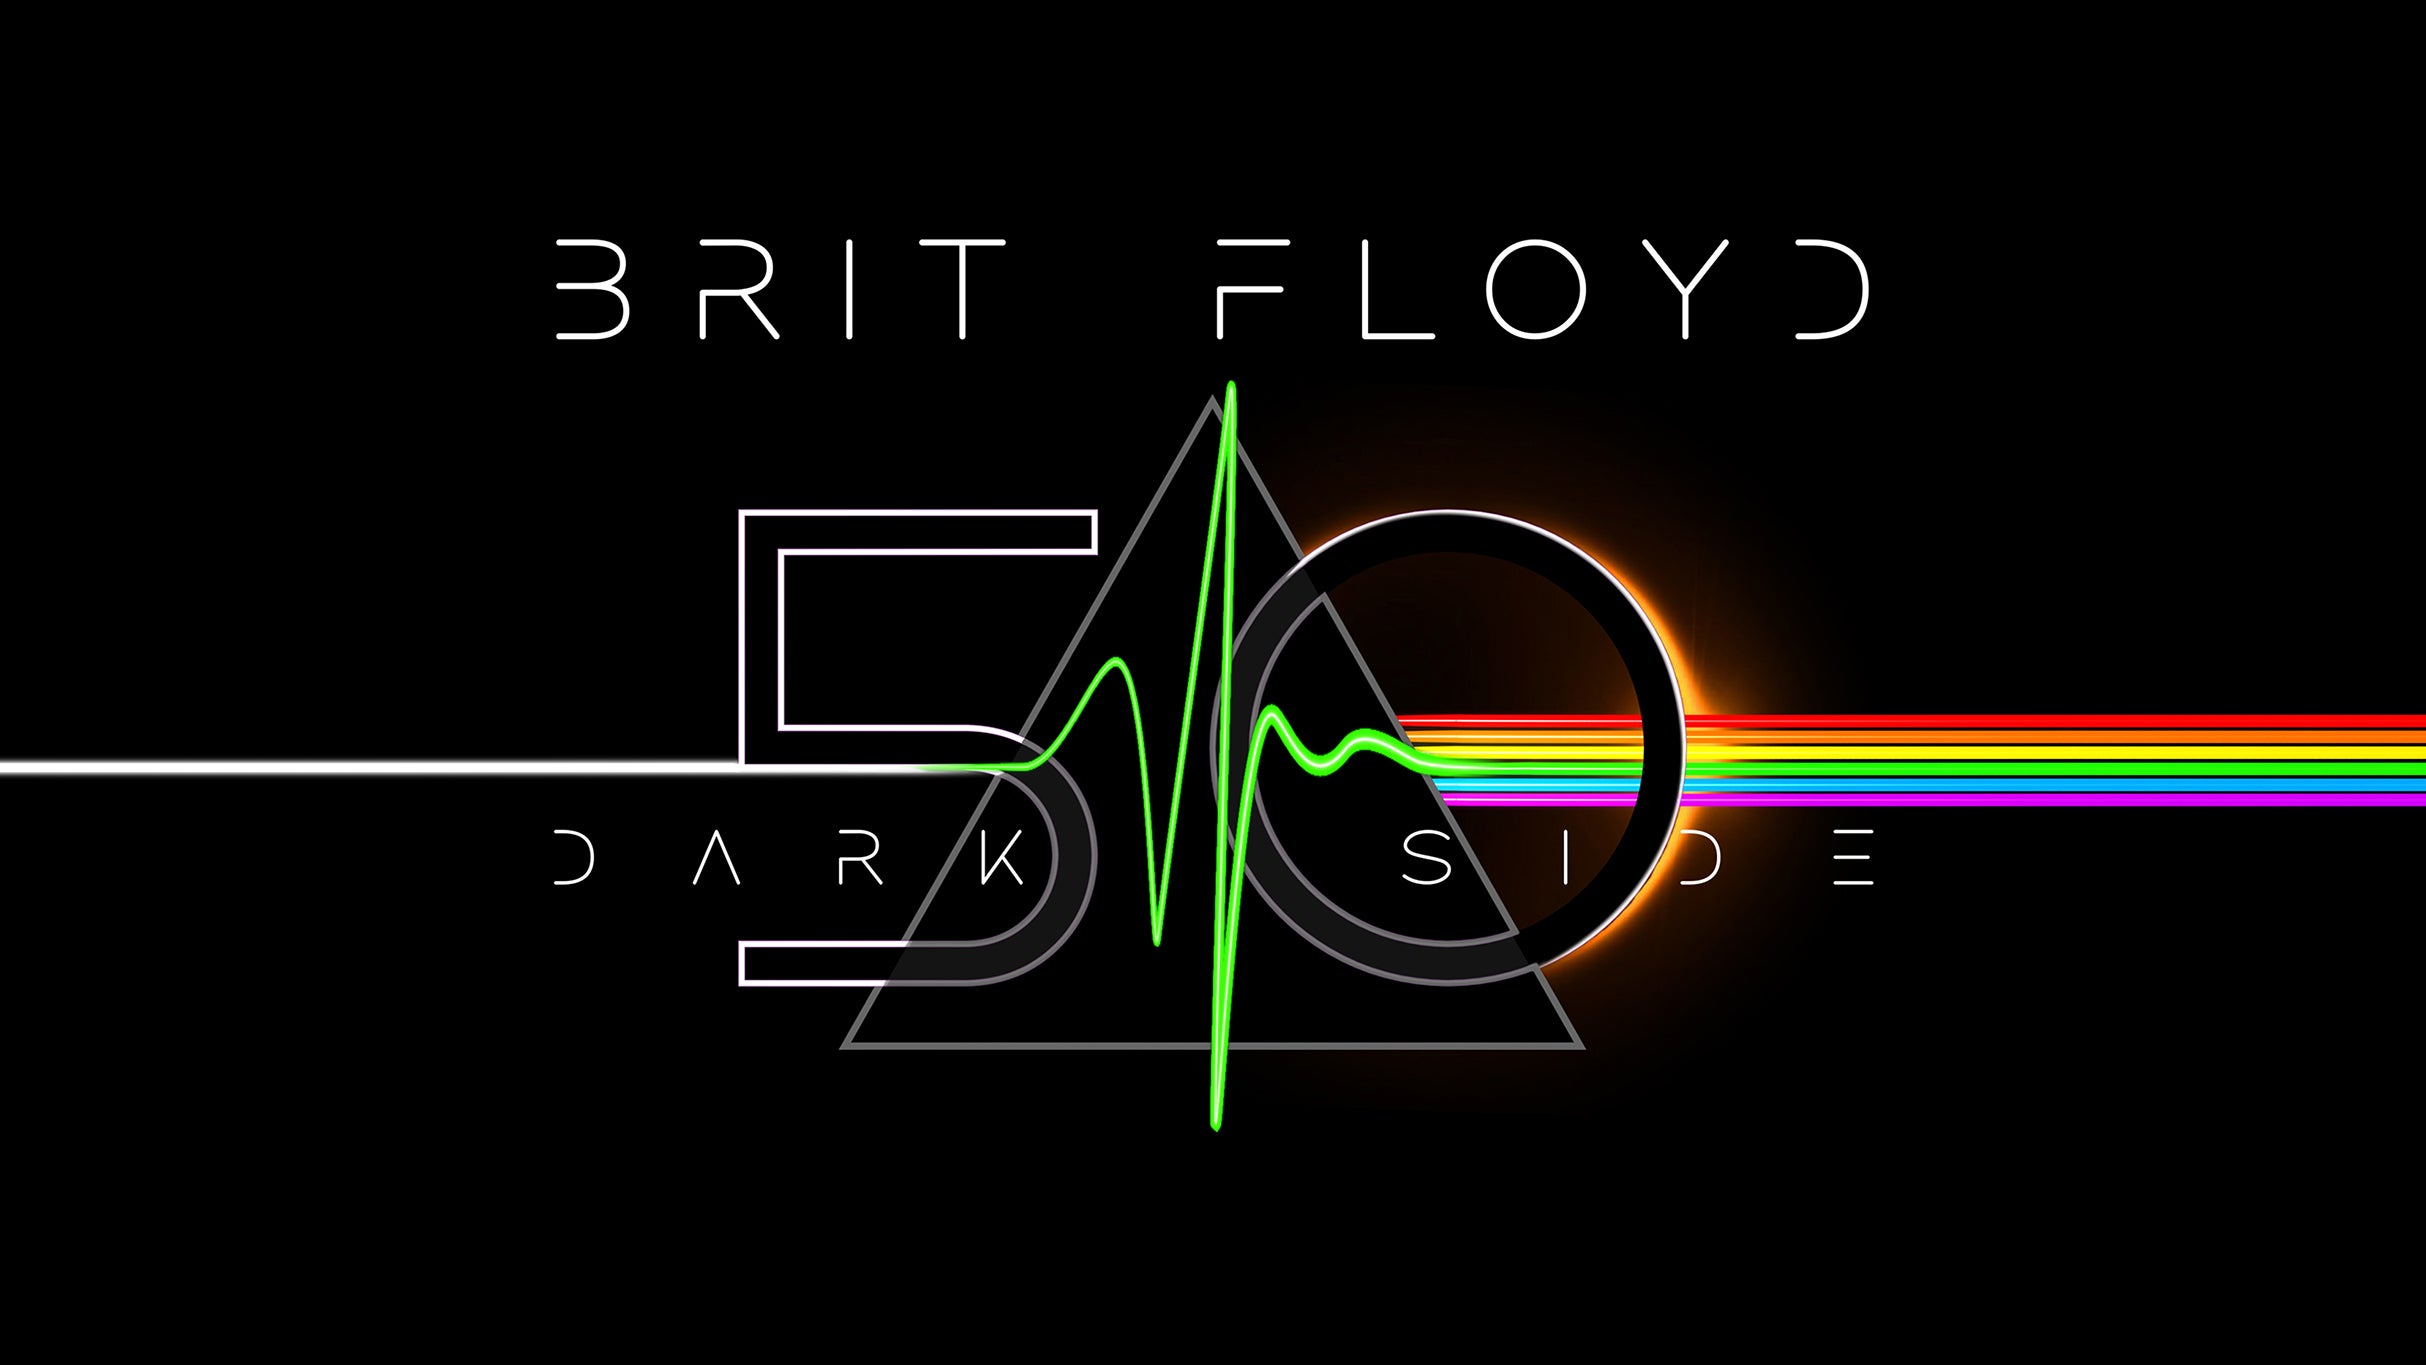 Brit Floyd-50 Years of Darkside at Genesee Theatre